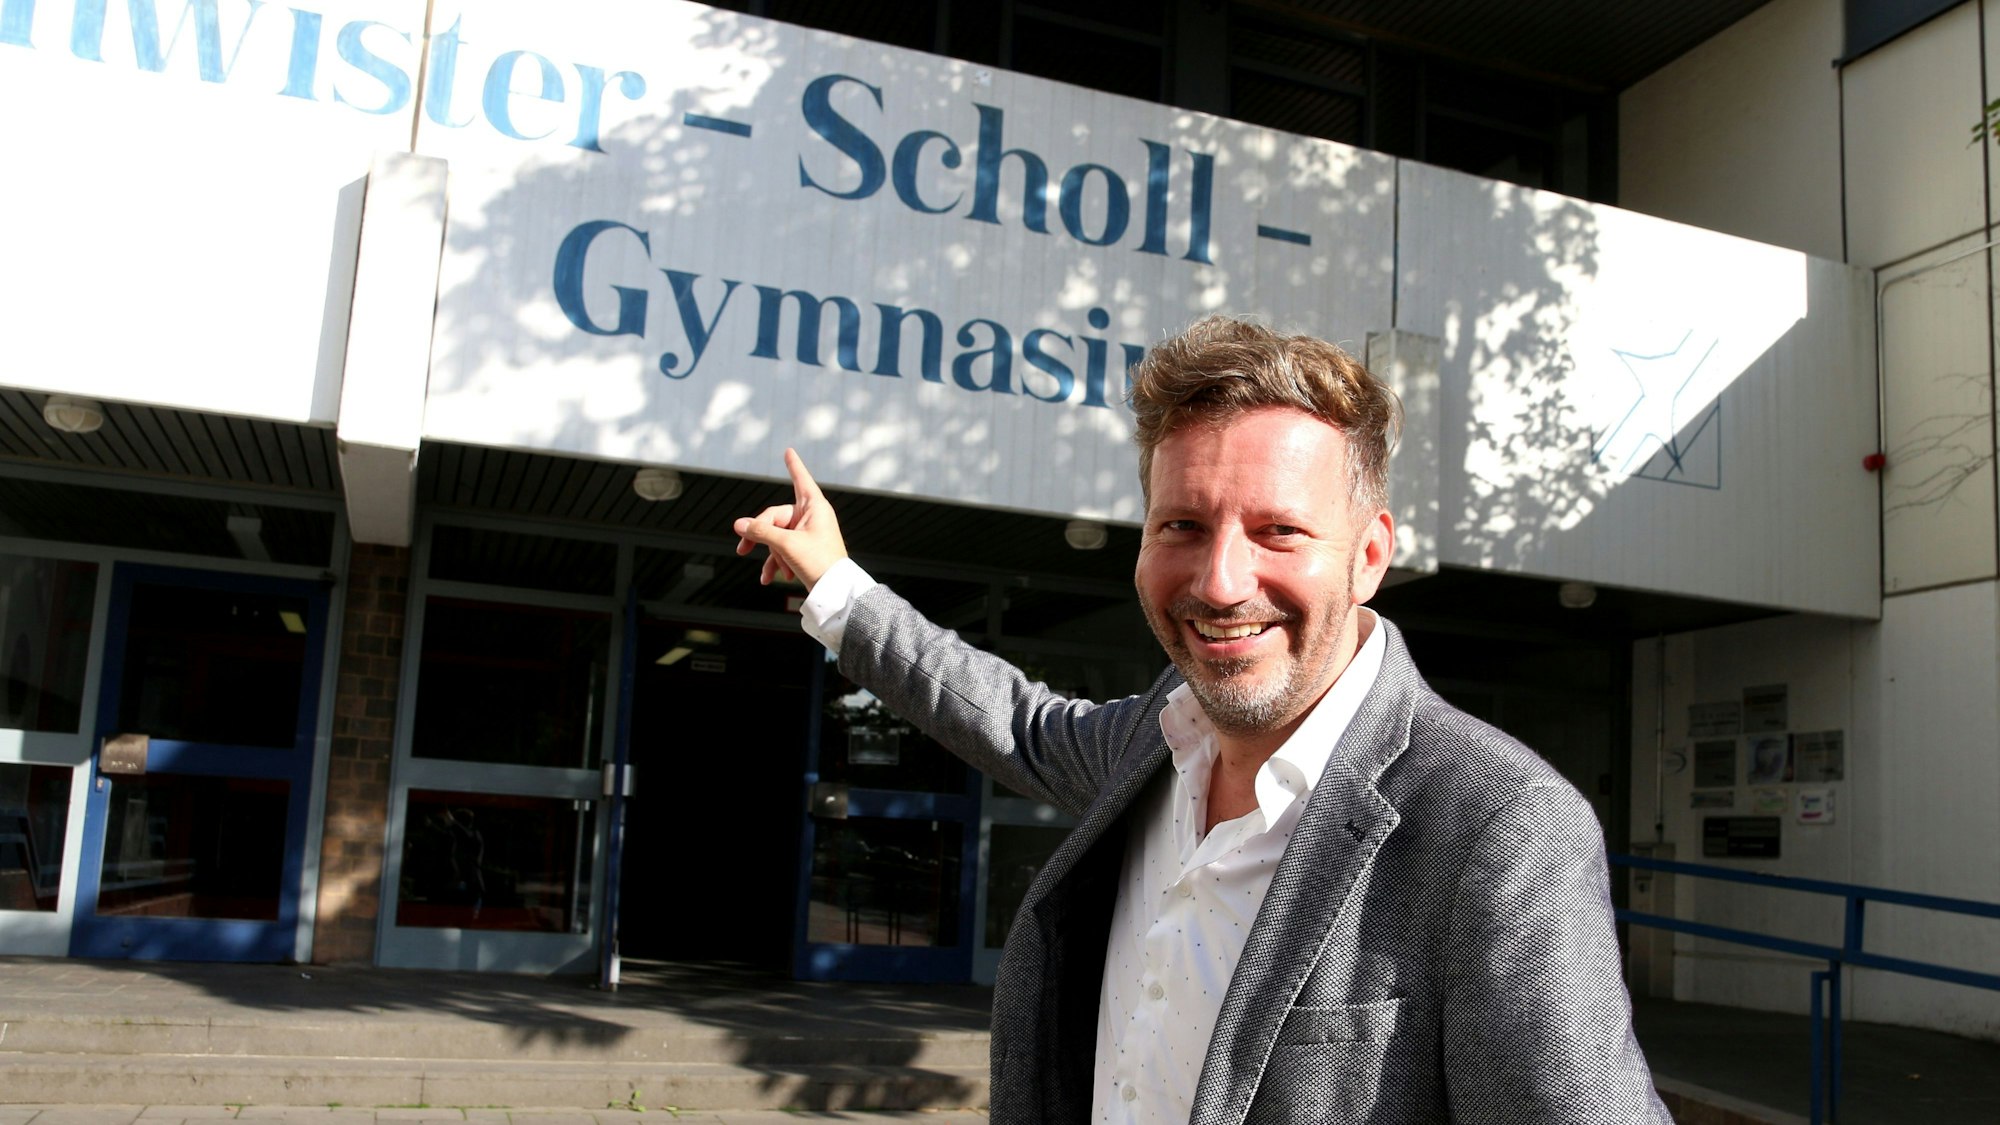 Thorsten Schorn zeigt mit dem rechten Zeigefinger auf das Schild des Geschwister-Scholl-Gymnasiums in Pulheim und schaut dabei lachend in die Kamera.